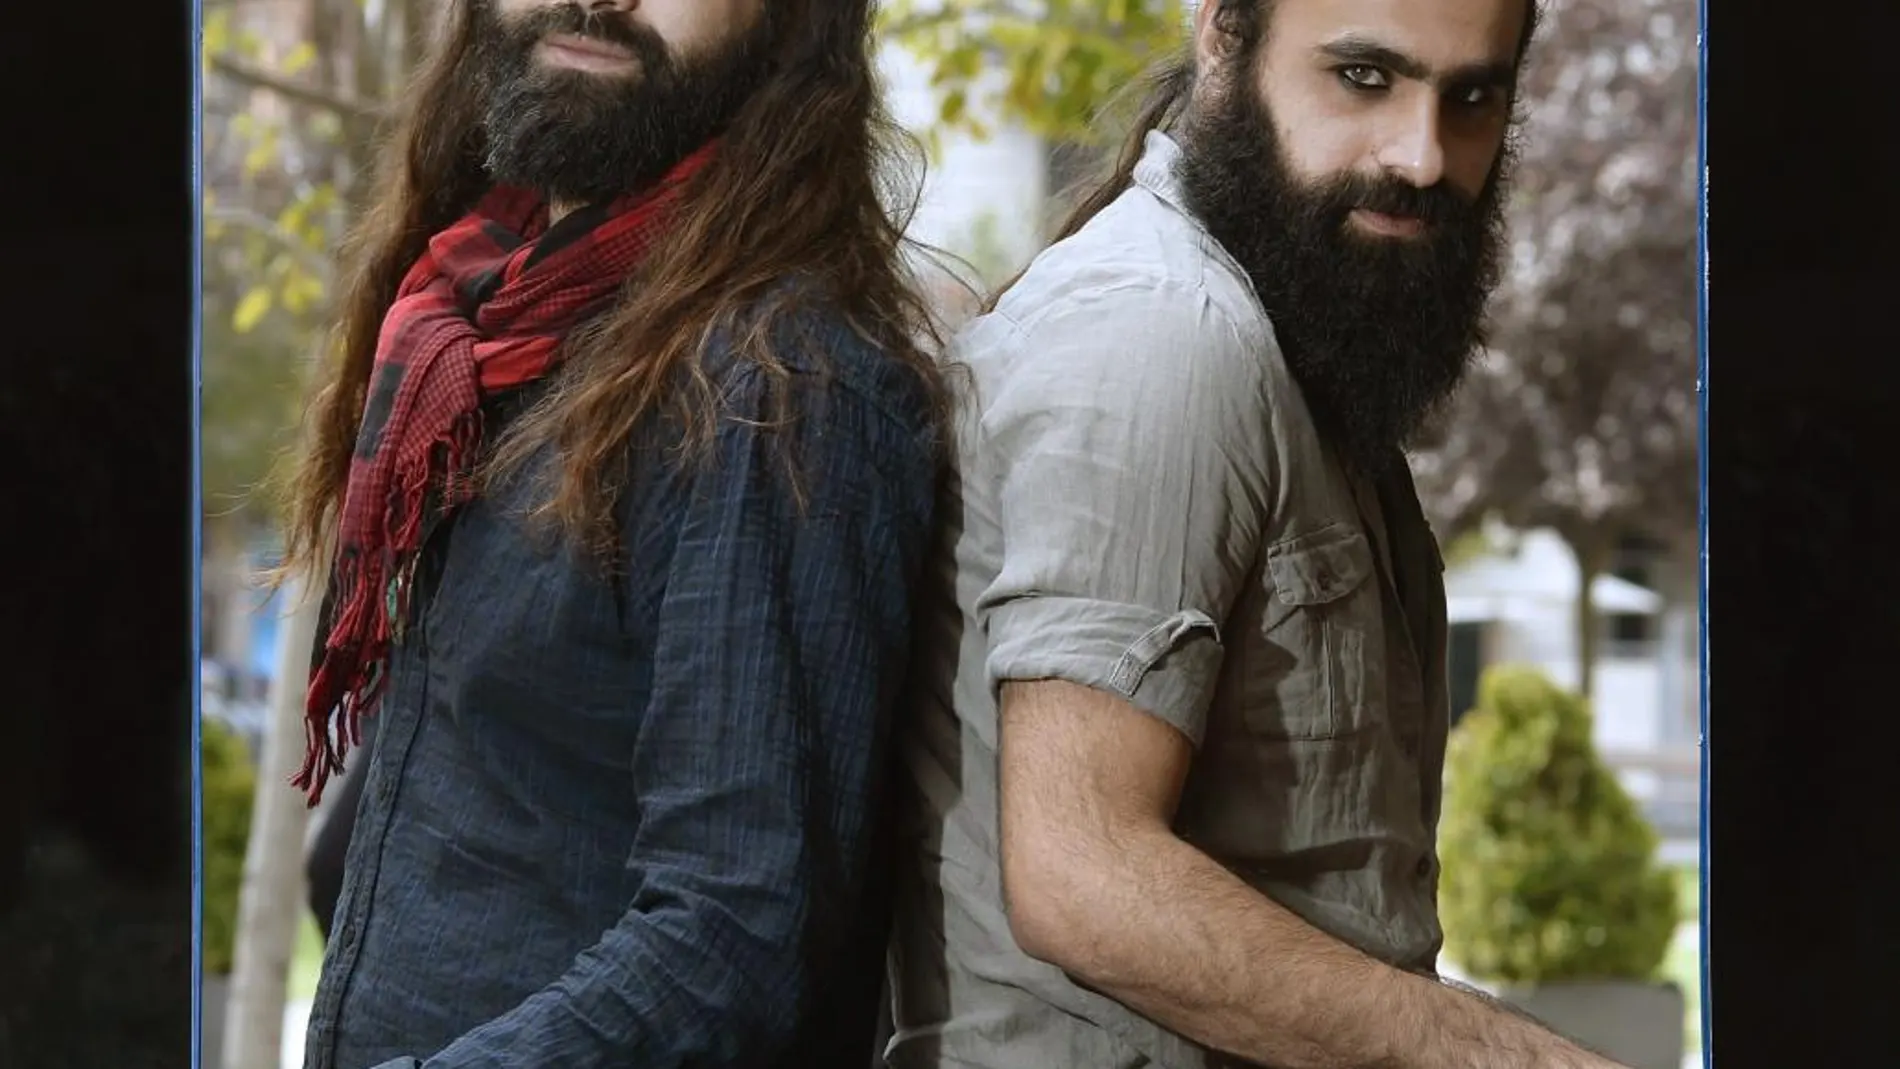 Los hermanos palestinos Tarzan y Arab Nasser, posan durante la presentación de hoy de su película "Dègradè"